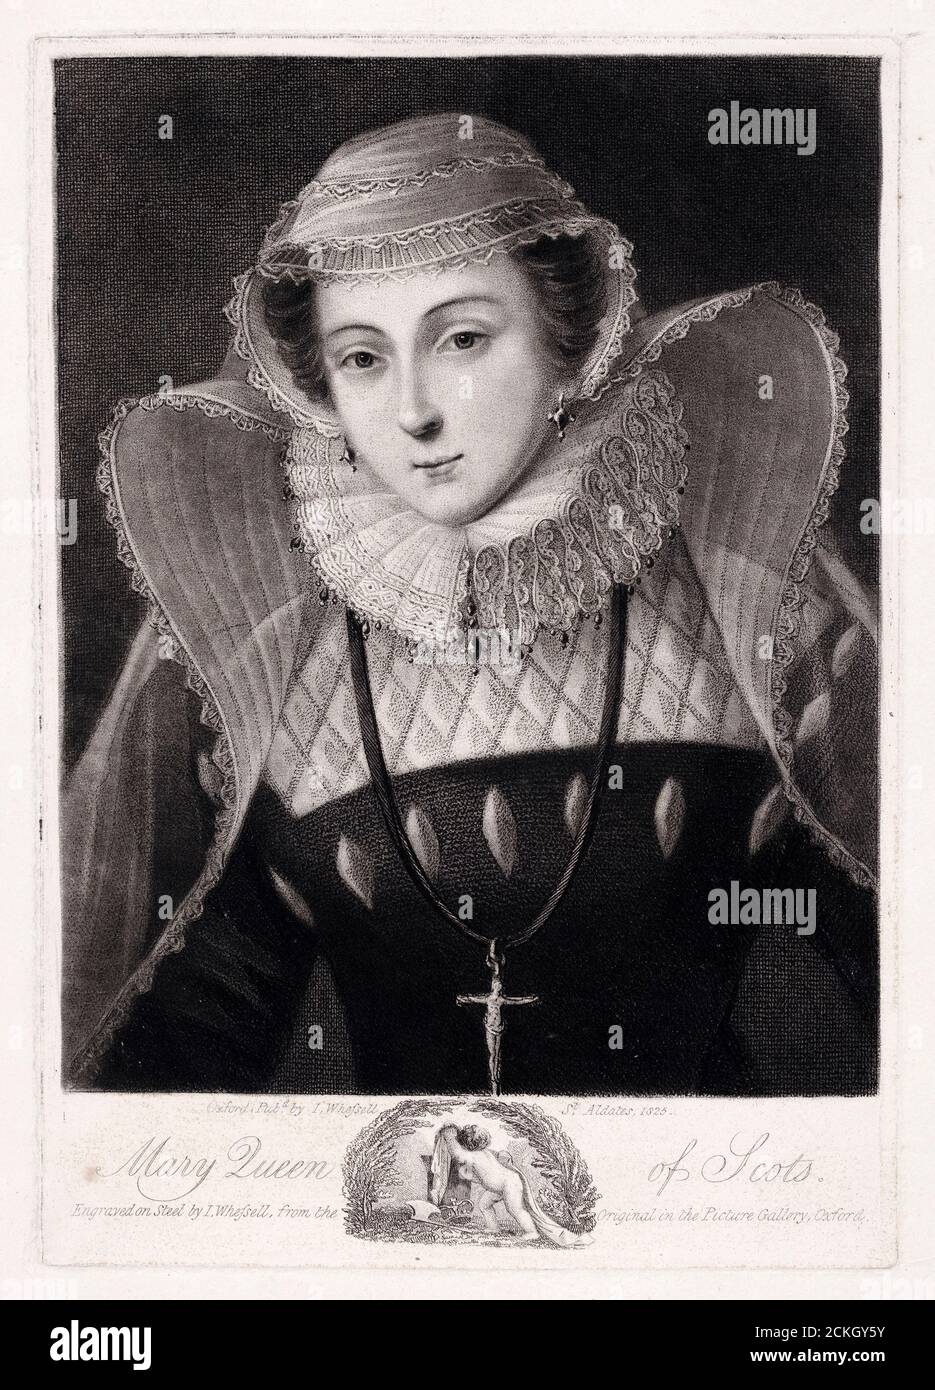 Maria Königin der Schotten (1542-1587), Porträtstich von John Whessell, 1825 Stockfoto